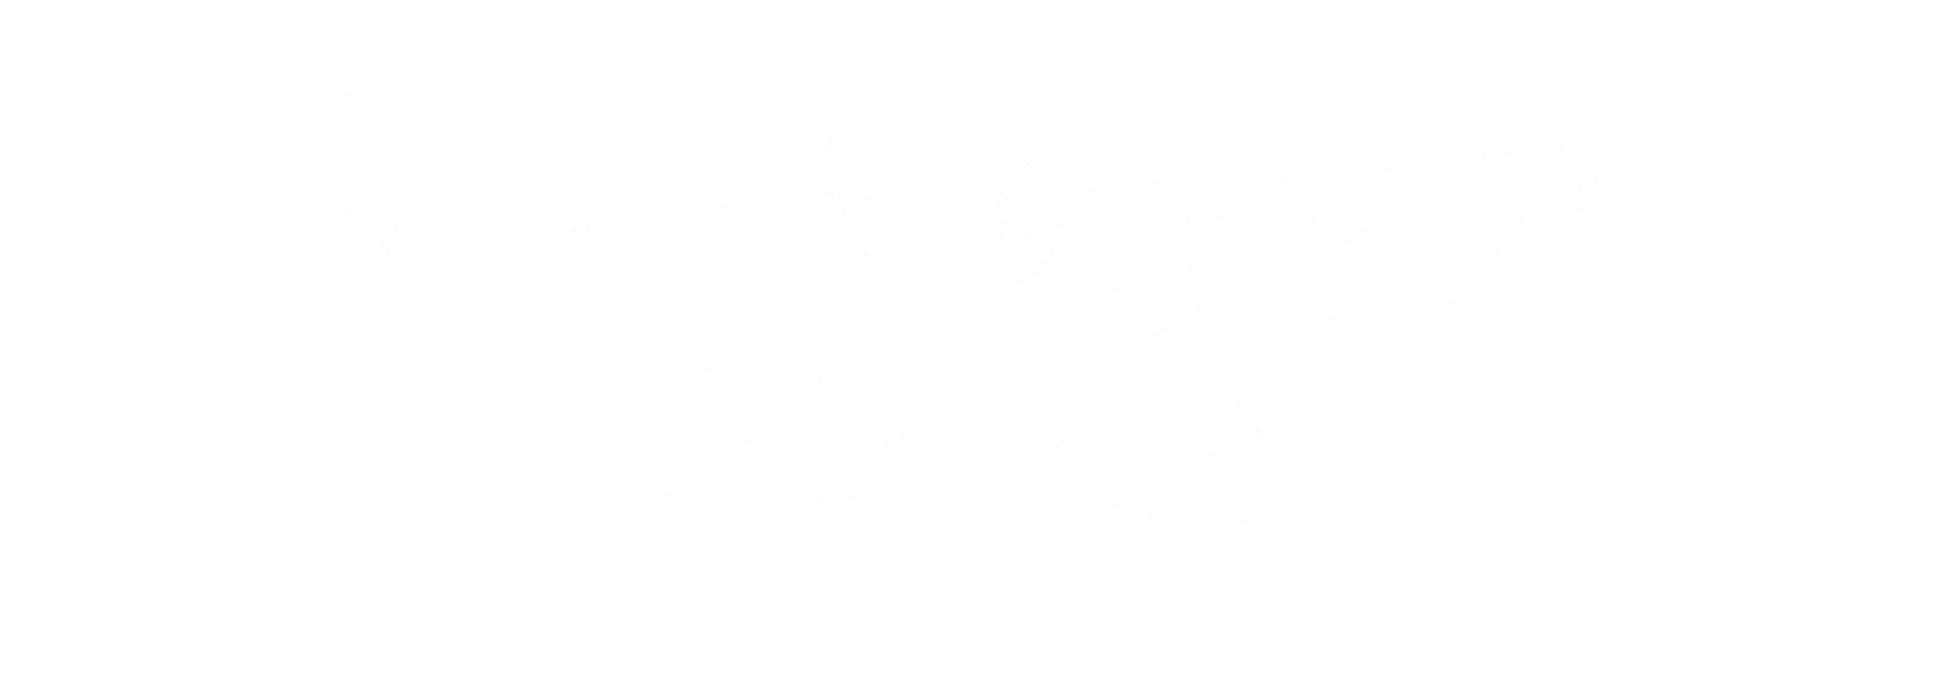 Free Spirit Tours